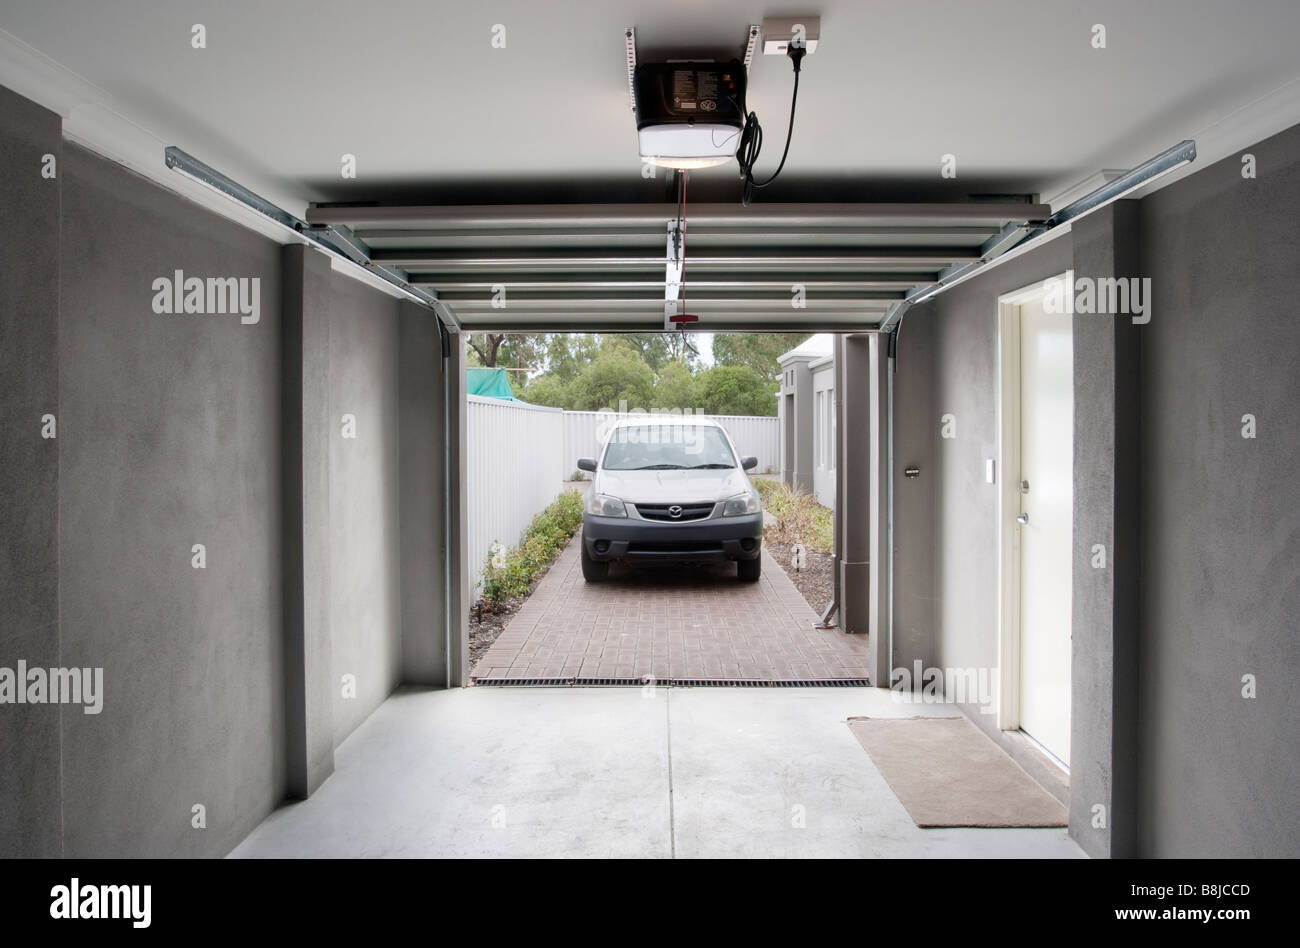 Une voiture dans un garage avec une porte de garage automatique Photo Stock  - Alamy